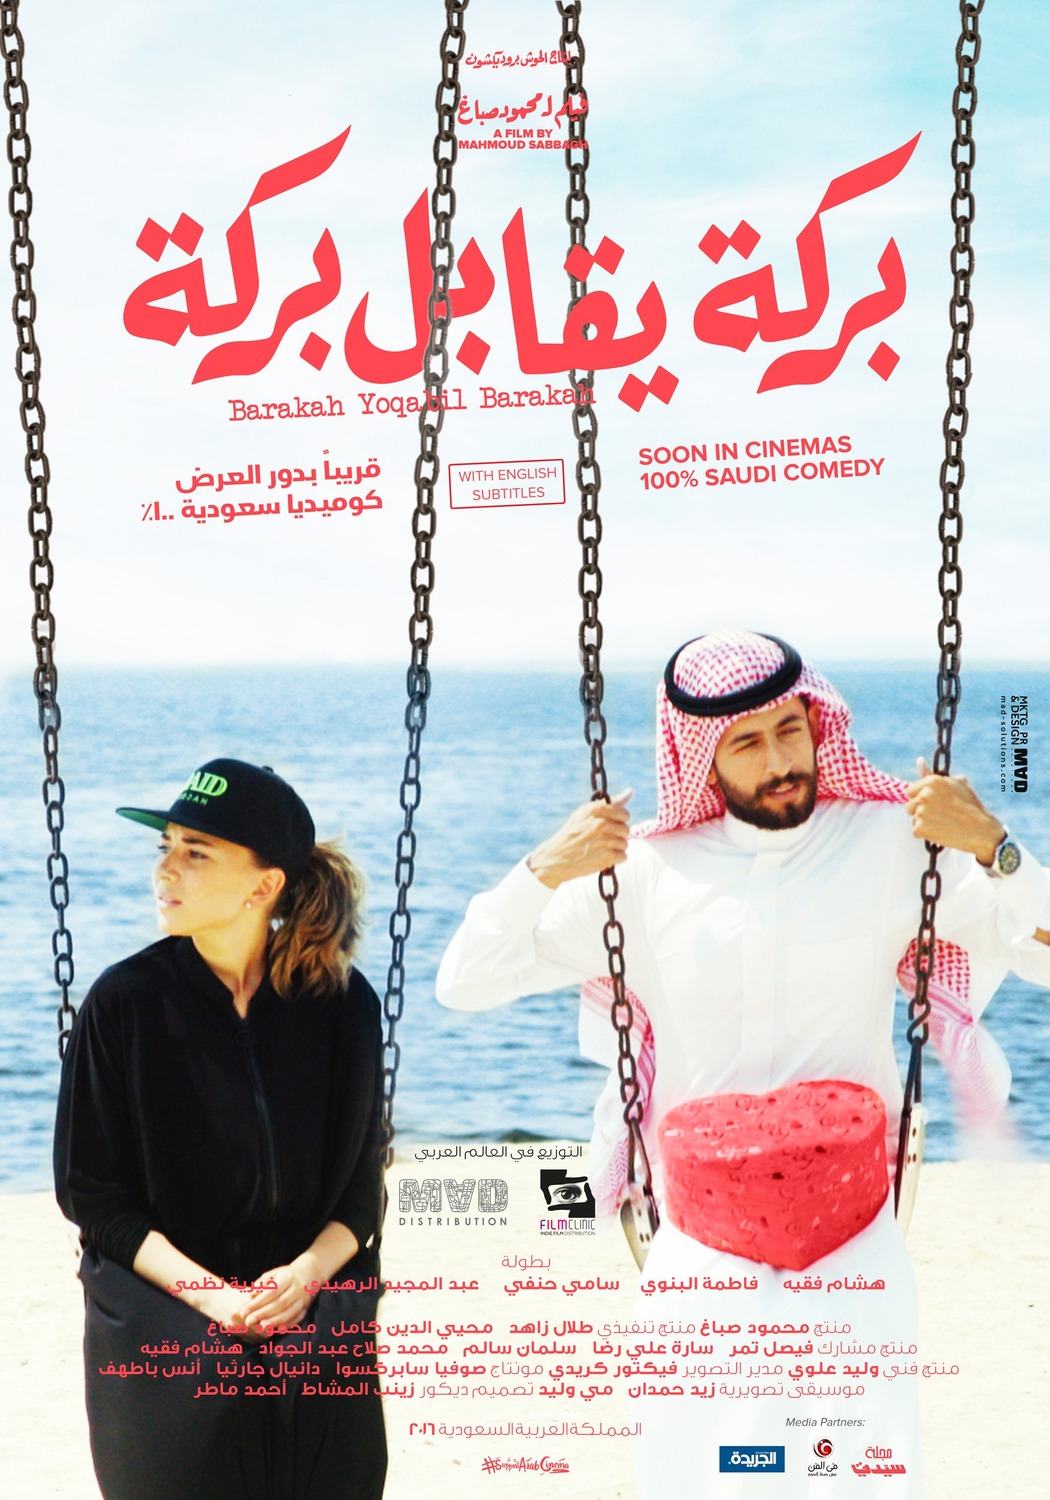 Extra Large Movie Poster Image for Barakah yoqabil Barakah 